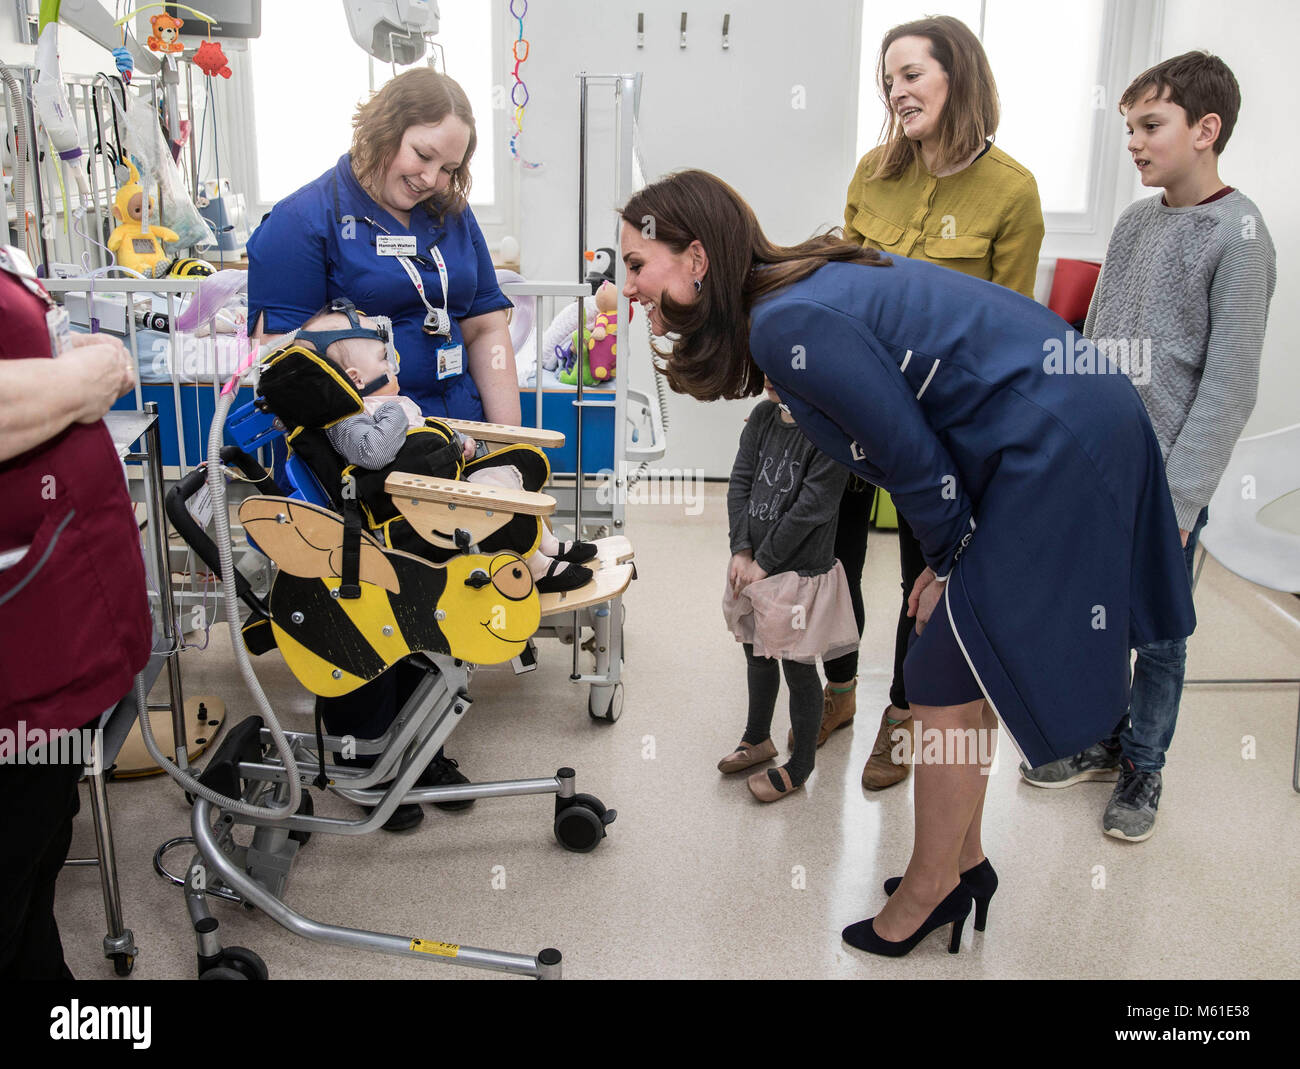 La duchesse de Cambridge se réunit dix mois Amara Kedwell- Parsons, qui est né prématurément et est un patient sur l'aire de "Snow leopard" ward lors d'une visite au St Thomas' Hospital, Londres, pour lancer officiellement une campagne pour promouvoir les soins infirmiers dans le monde entier. Banque D'Images